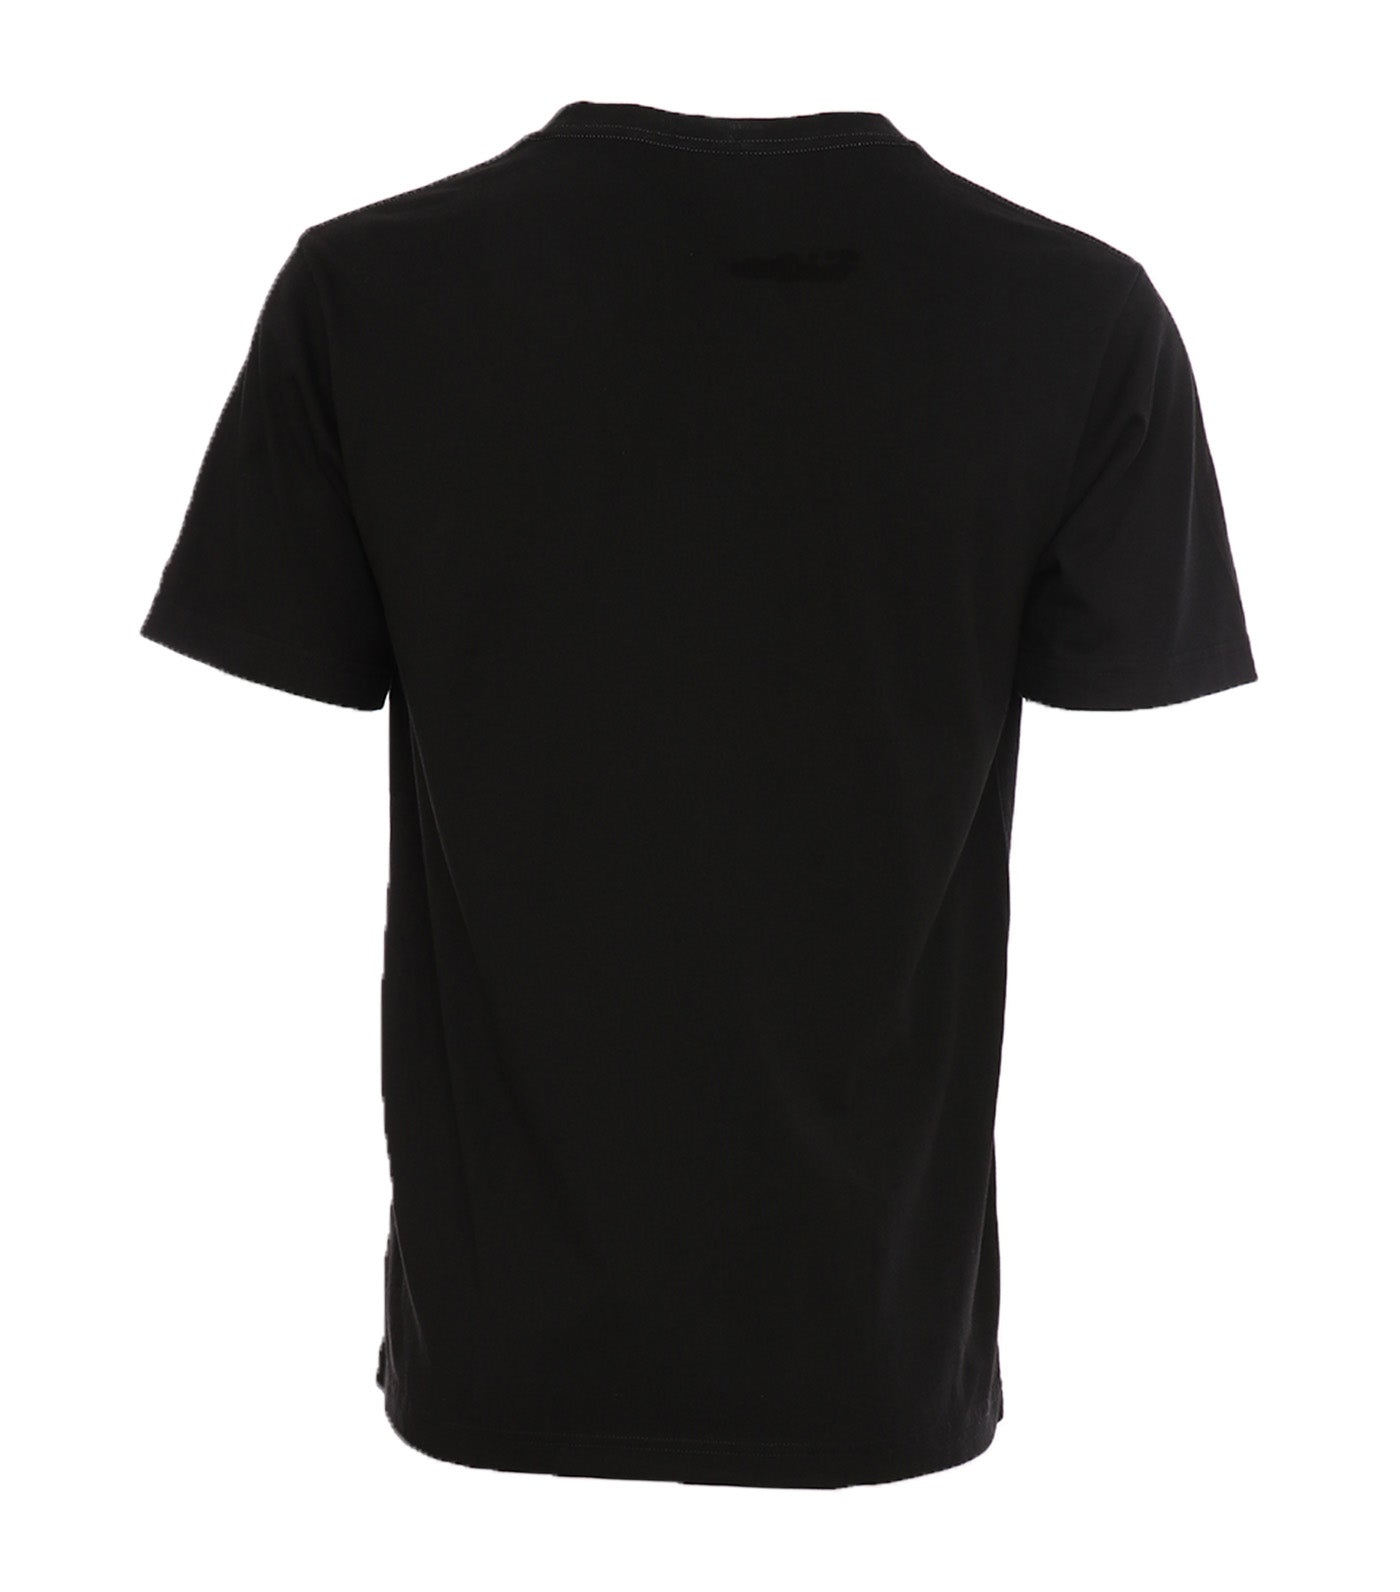 Japan C3-U305 Short Sleeve T-Shirt Black